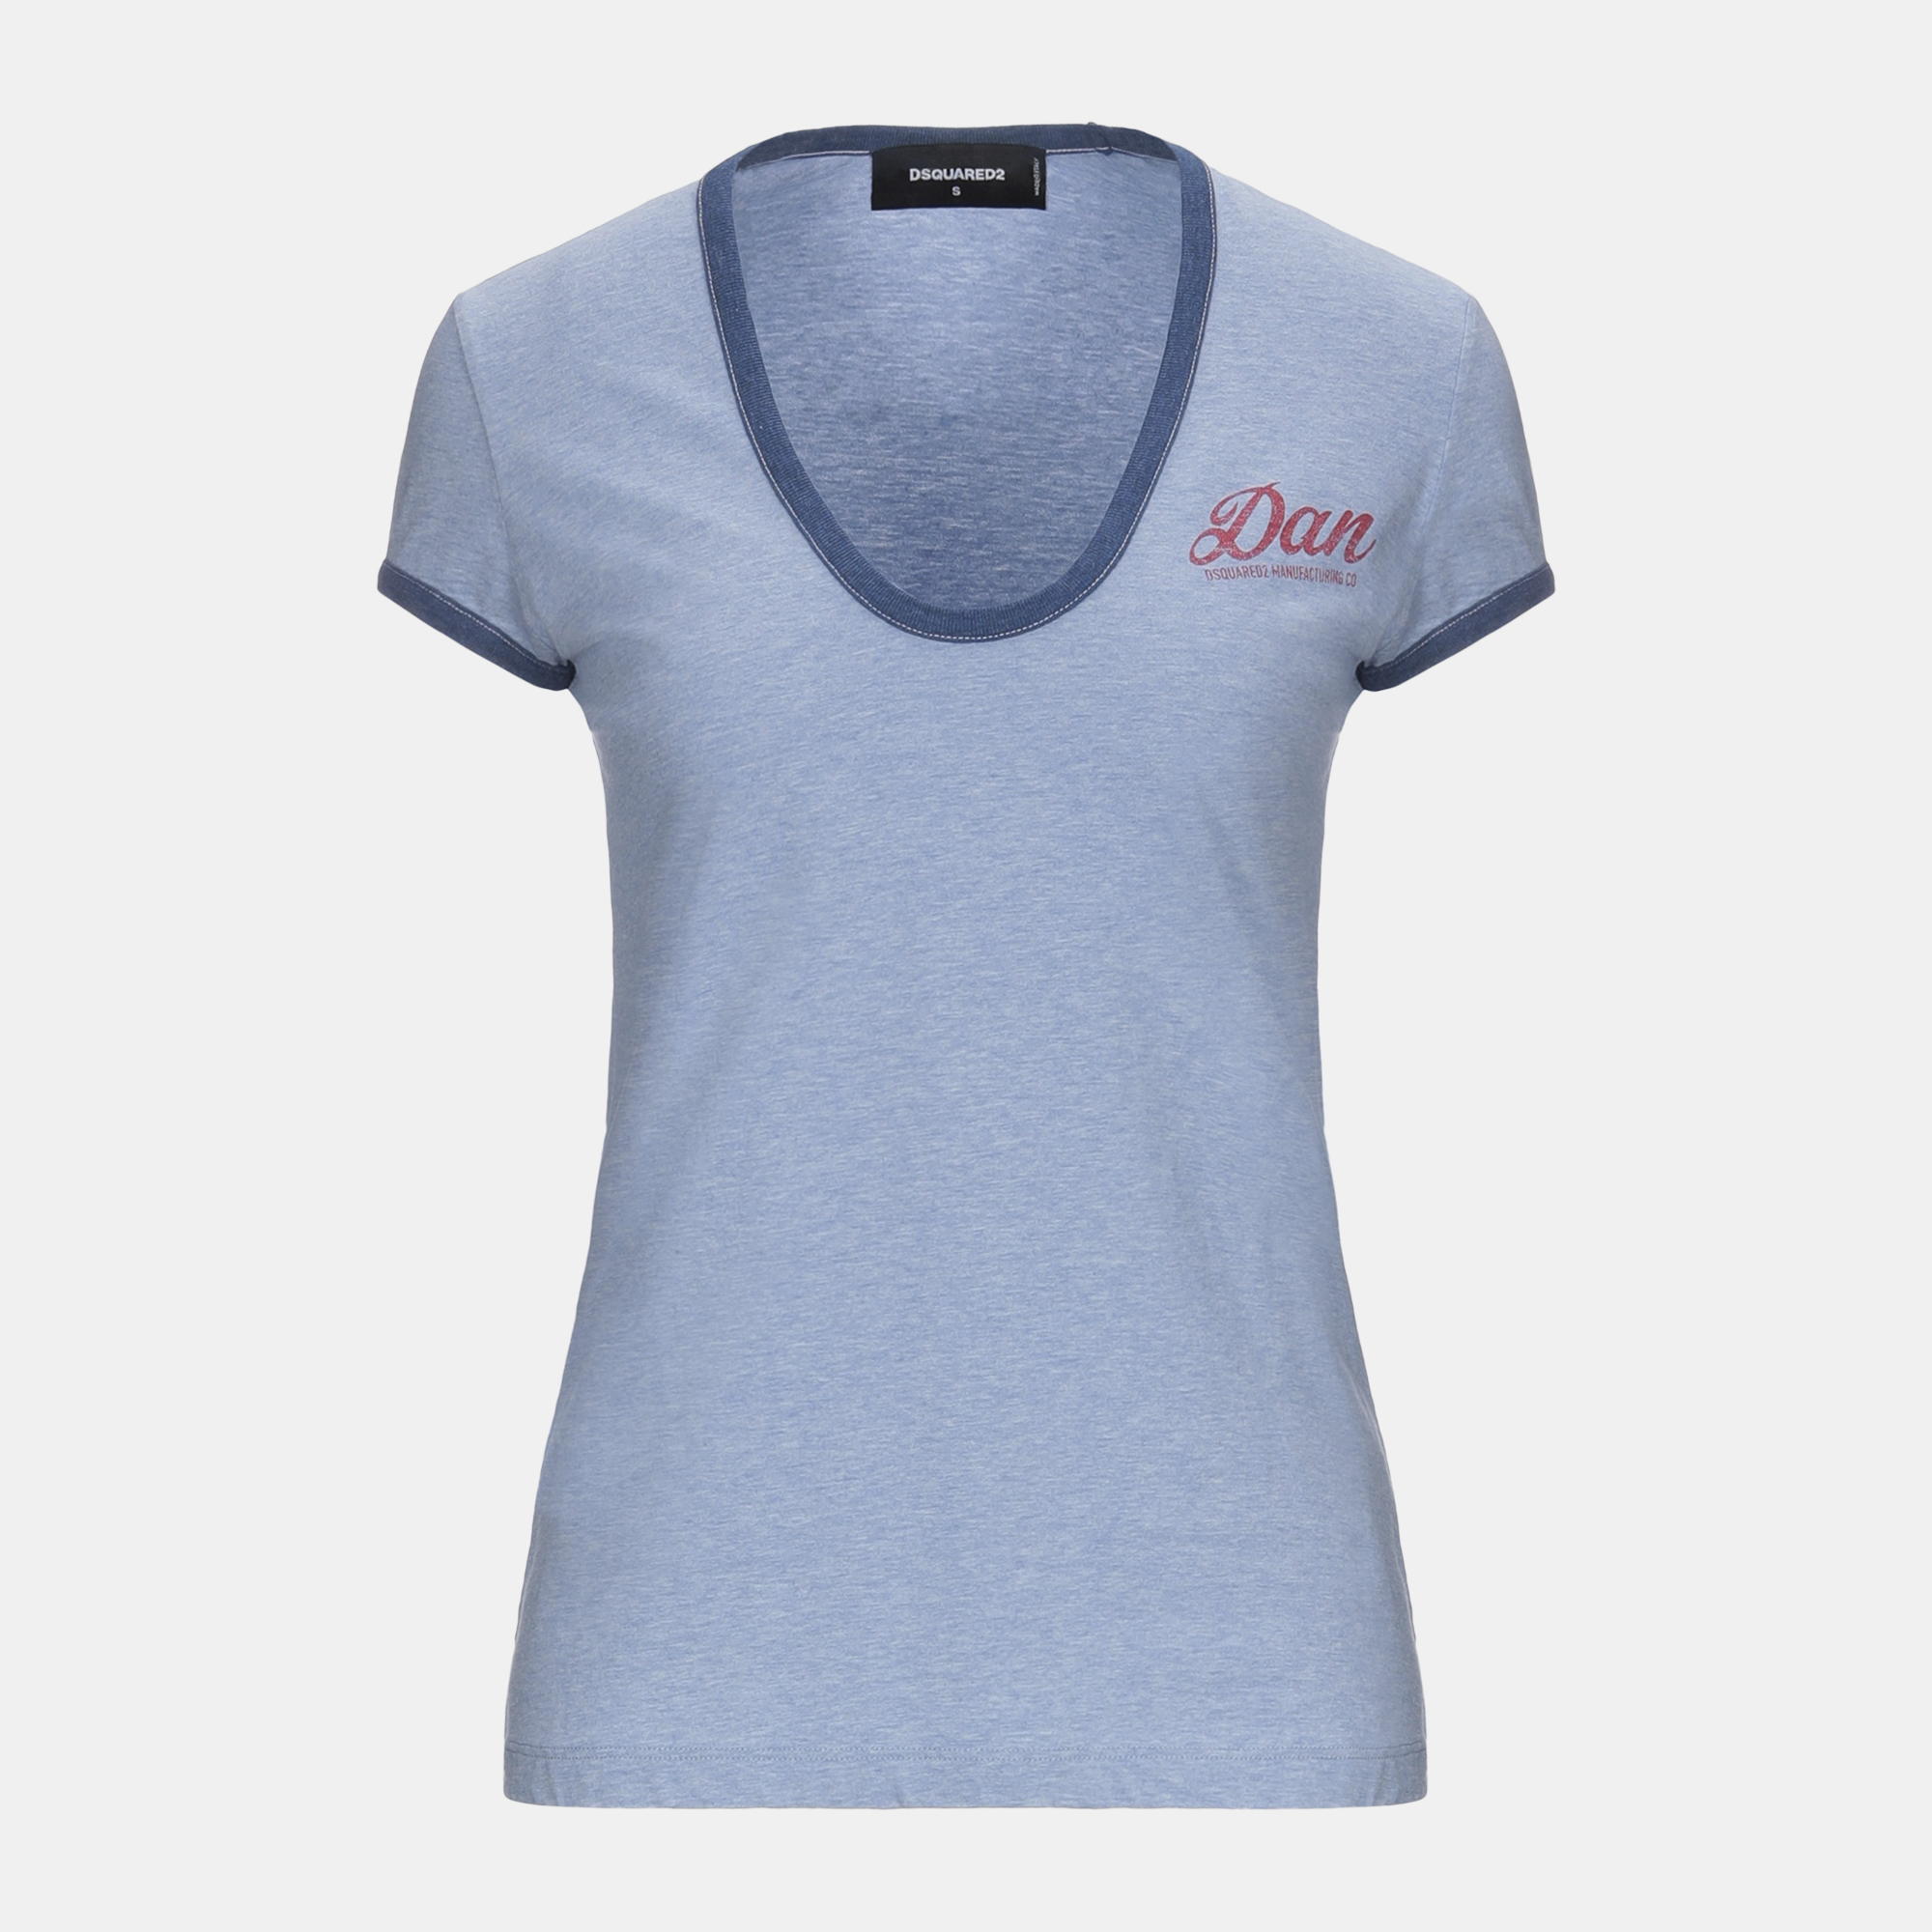 Dsquared2 blue cotton bella fit t-shirt s